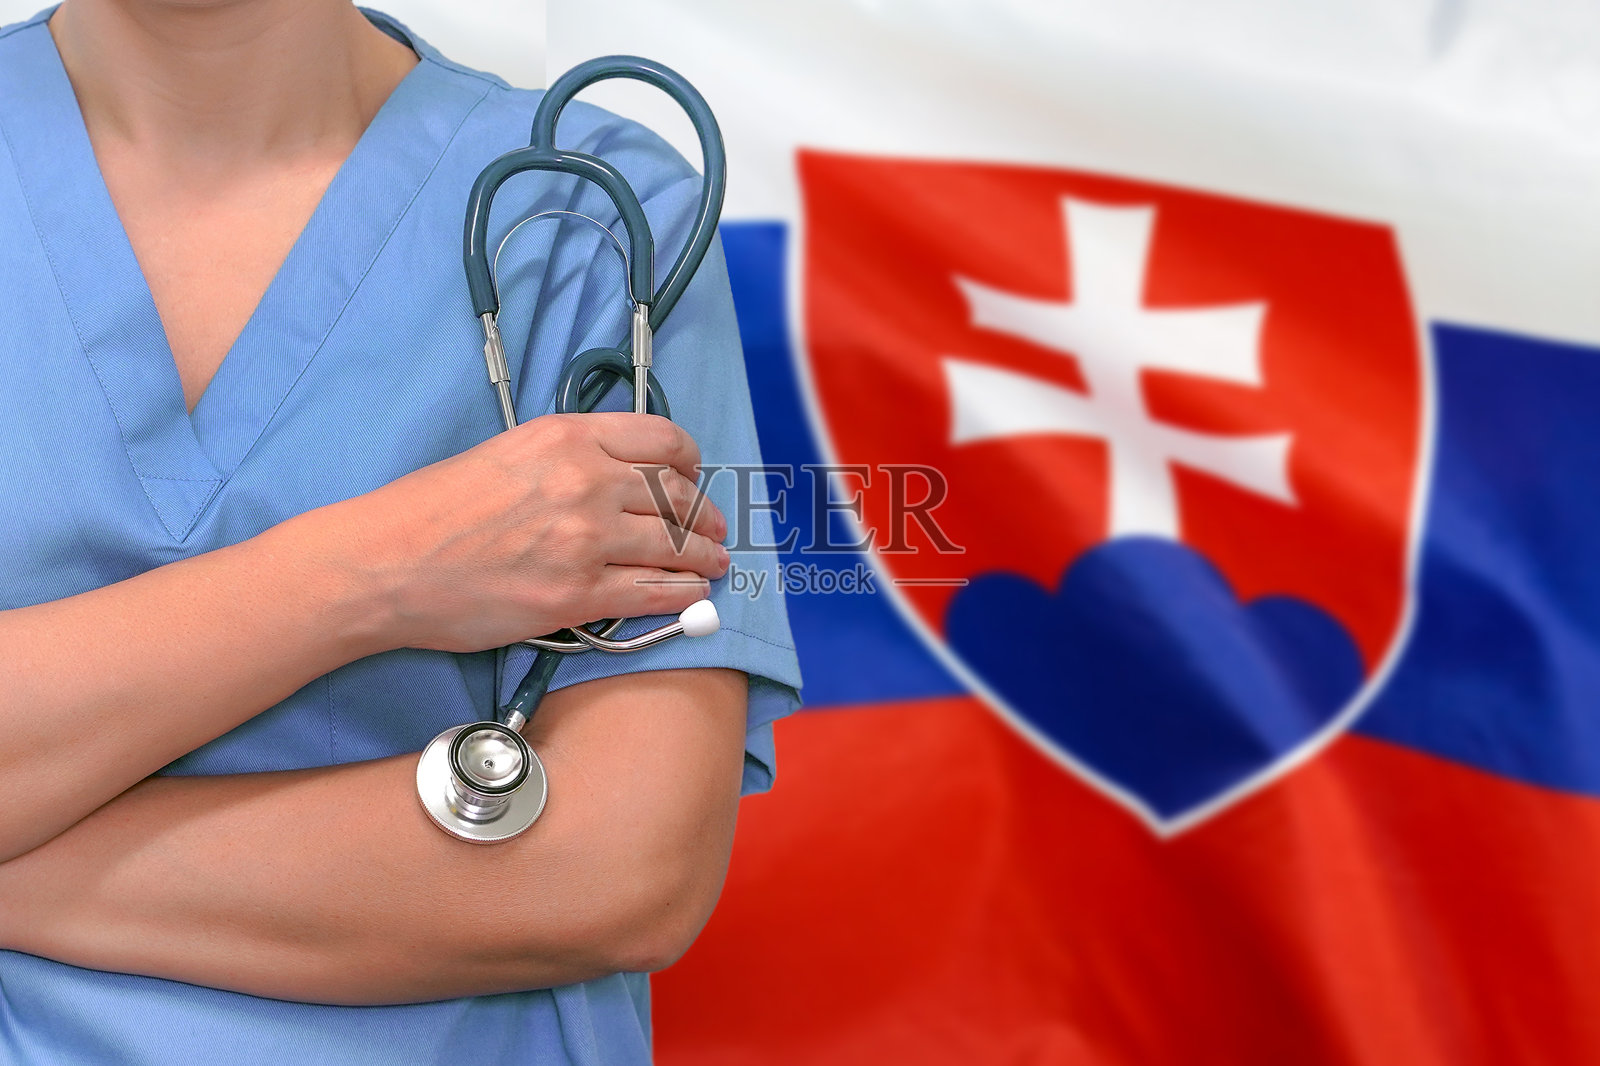 女外科医生或医生在斯洛伐克国旗的背景上佩戴听诊器。斯洛伐克的保健、外科和医疗概念照片摄影图片